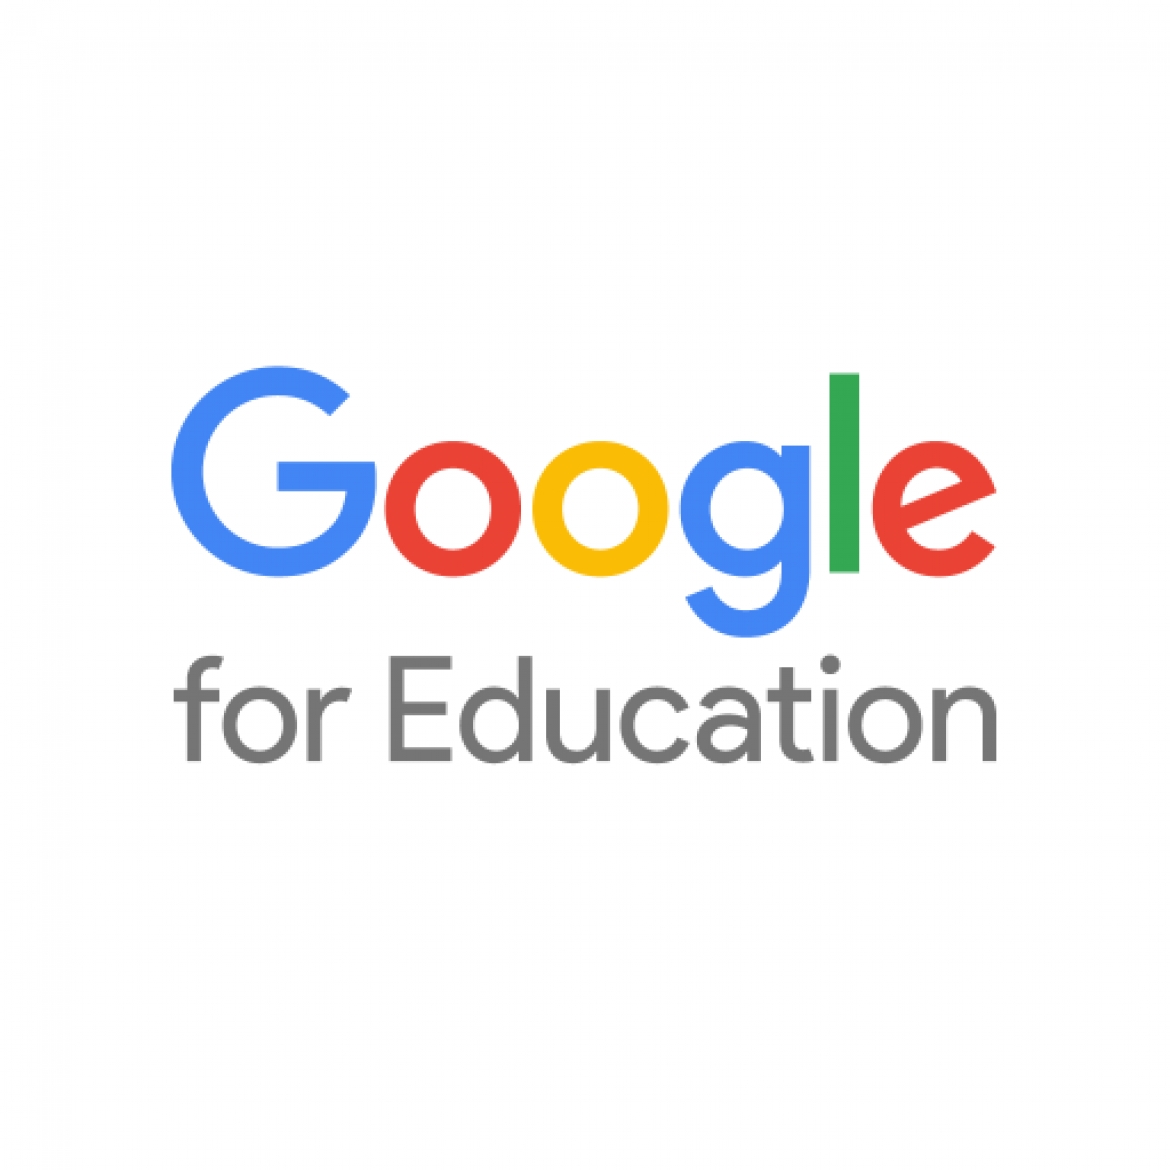 Австралийское подразделение компании Google запустило новую программу для учителей